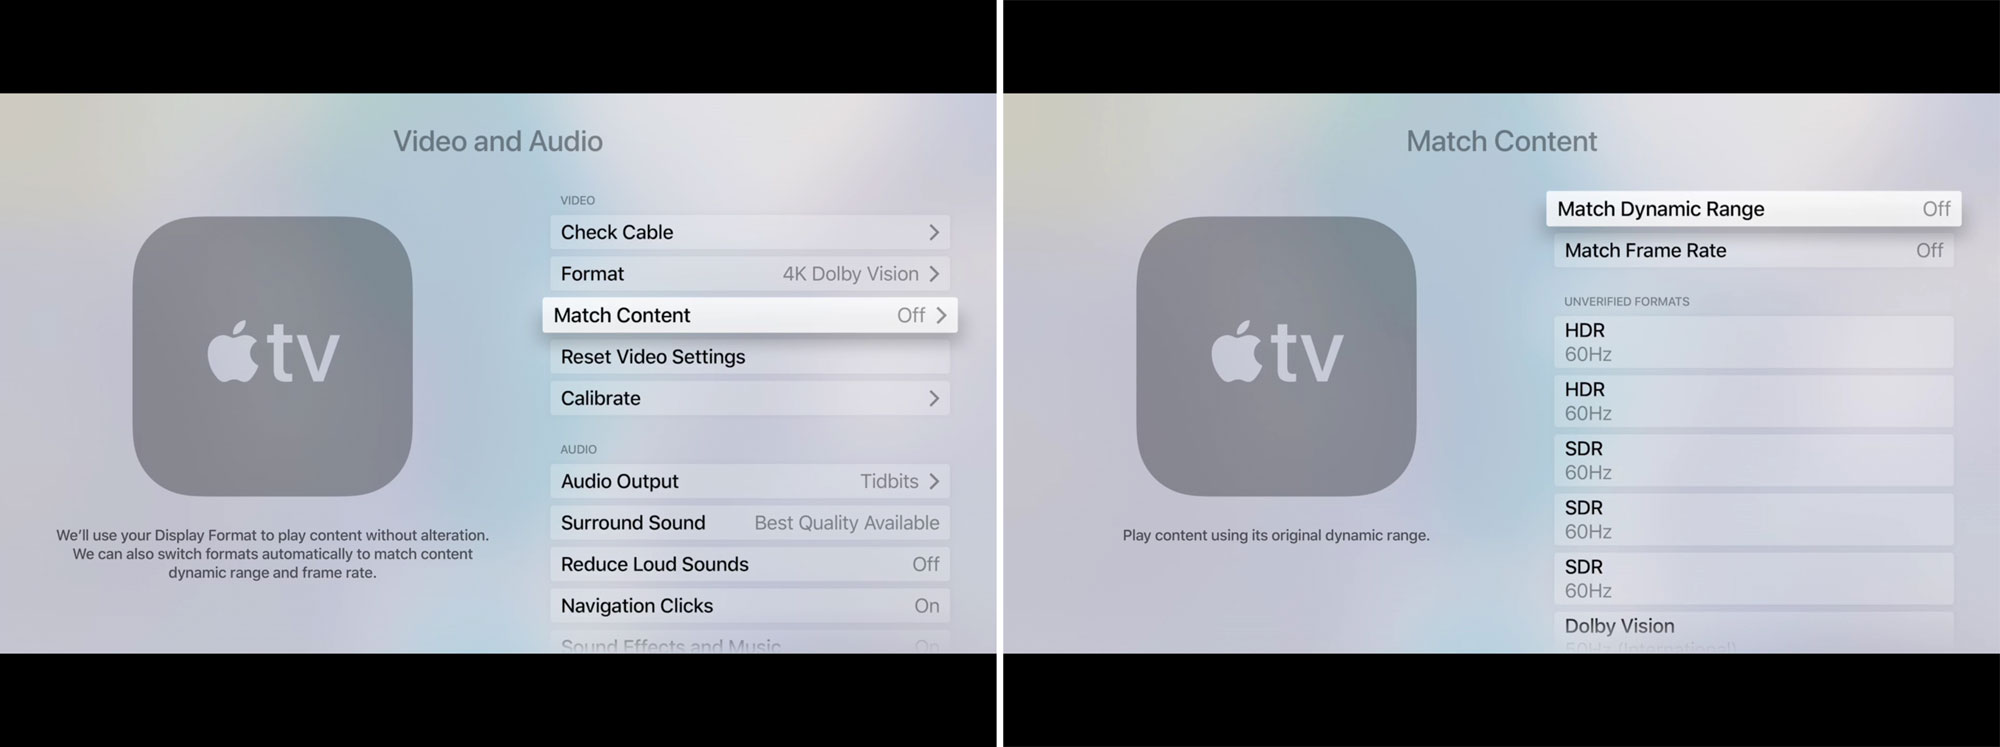 Gå i stykker Ret luft Apple TV 4K kan automatisk skifte billedfrekvens og SDR/HDR i tvOS 11.2 -  FlatpanelsDK